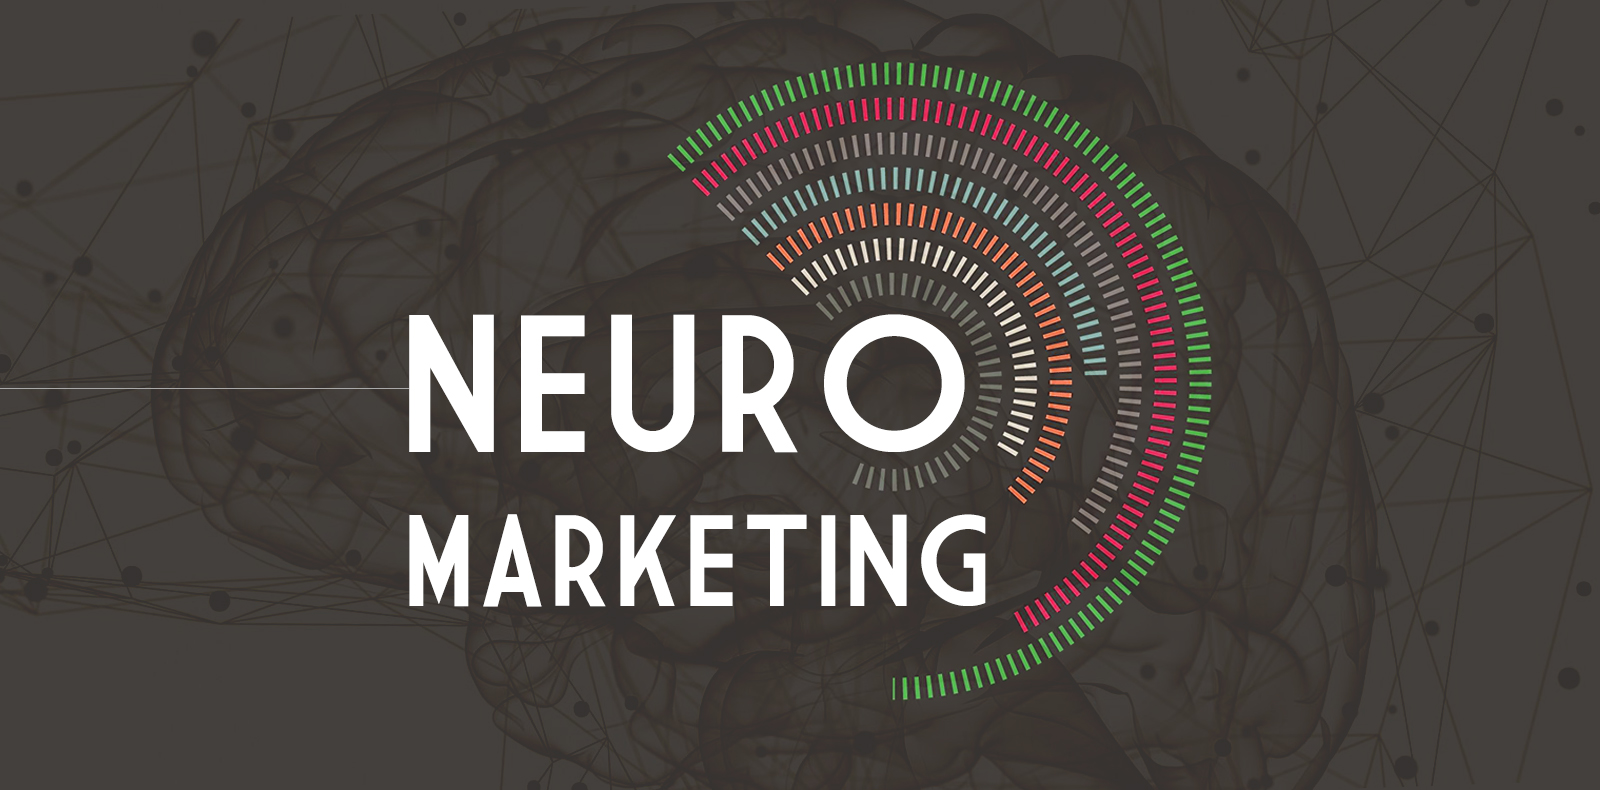 بازاریابی عصبی، راهکاری برای نفوذ به ذهن مخاطبان